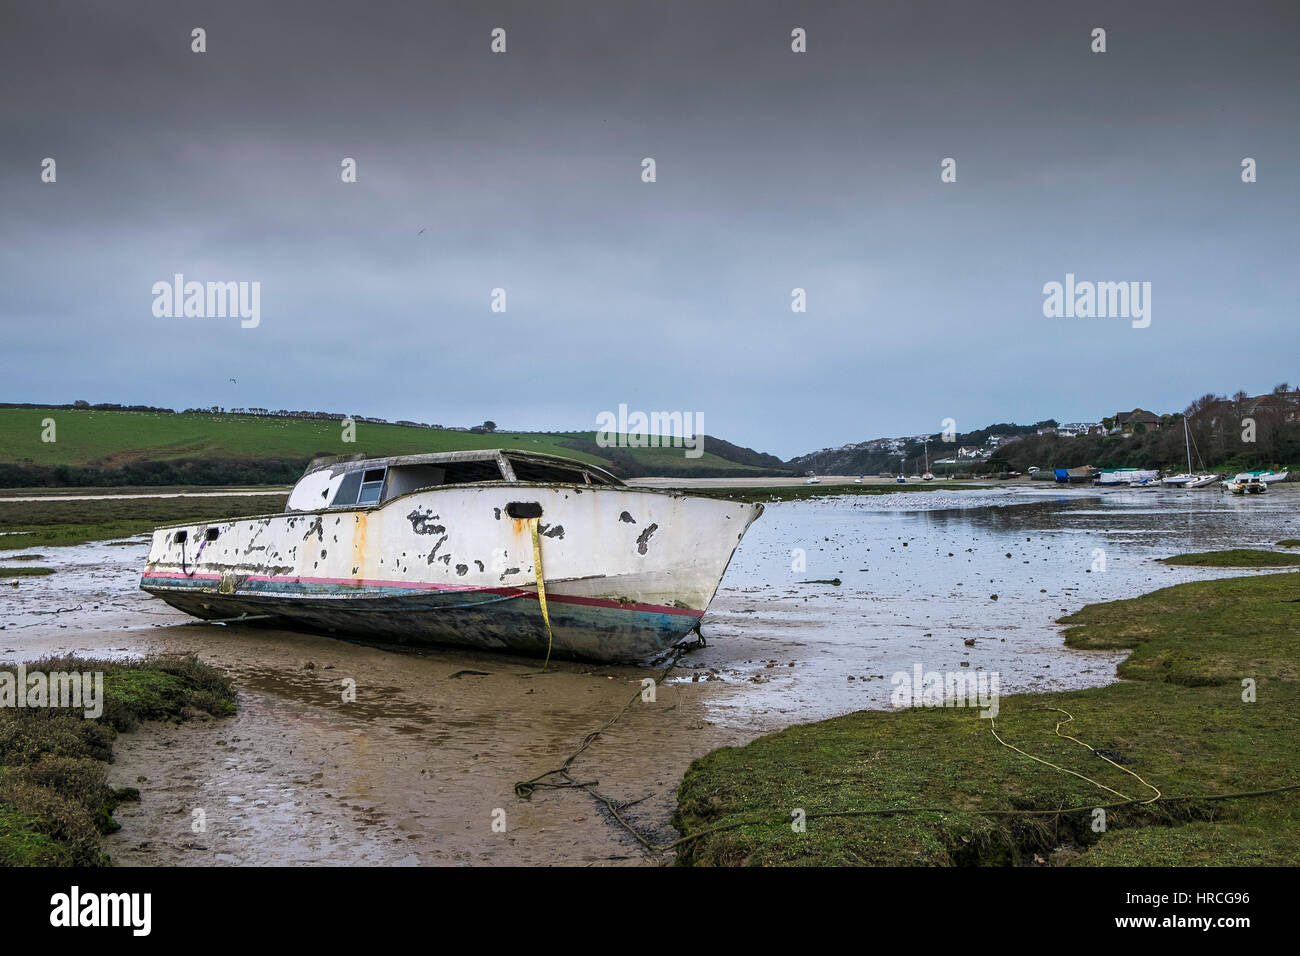 Rimane barca abbandonata spiaggiata gannel estuary cupo nuvoloso giorno newquay cornwall regno unito meteo Foto Stock